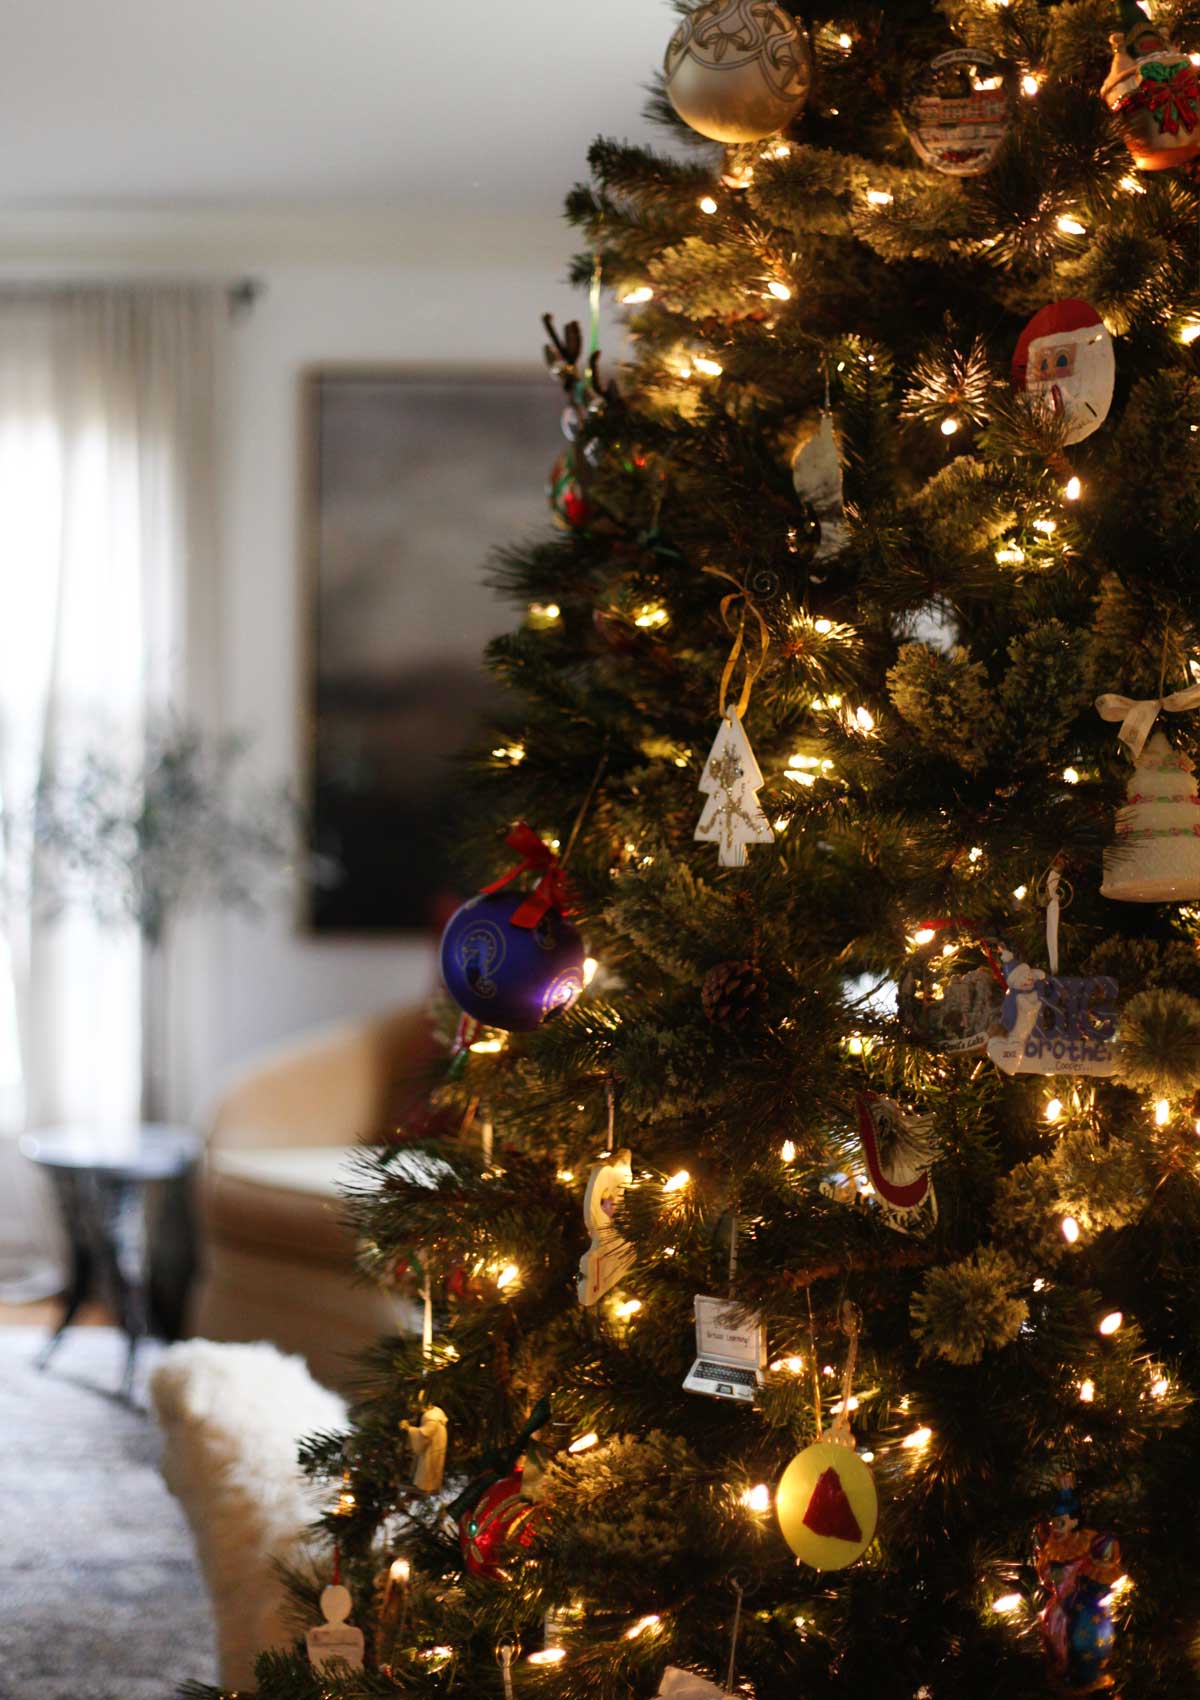 Christmas Tree Decor - Holiday Home Tour